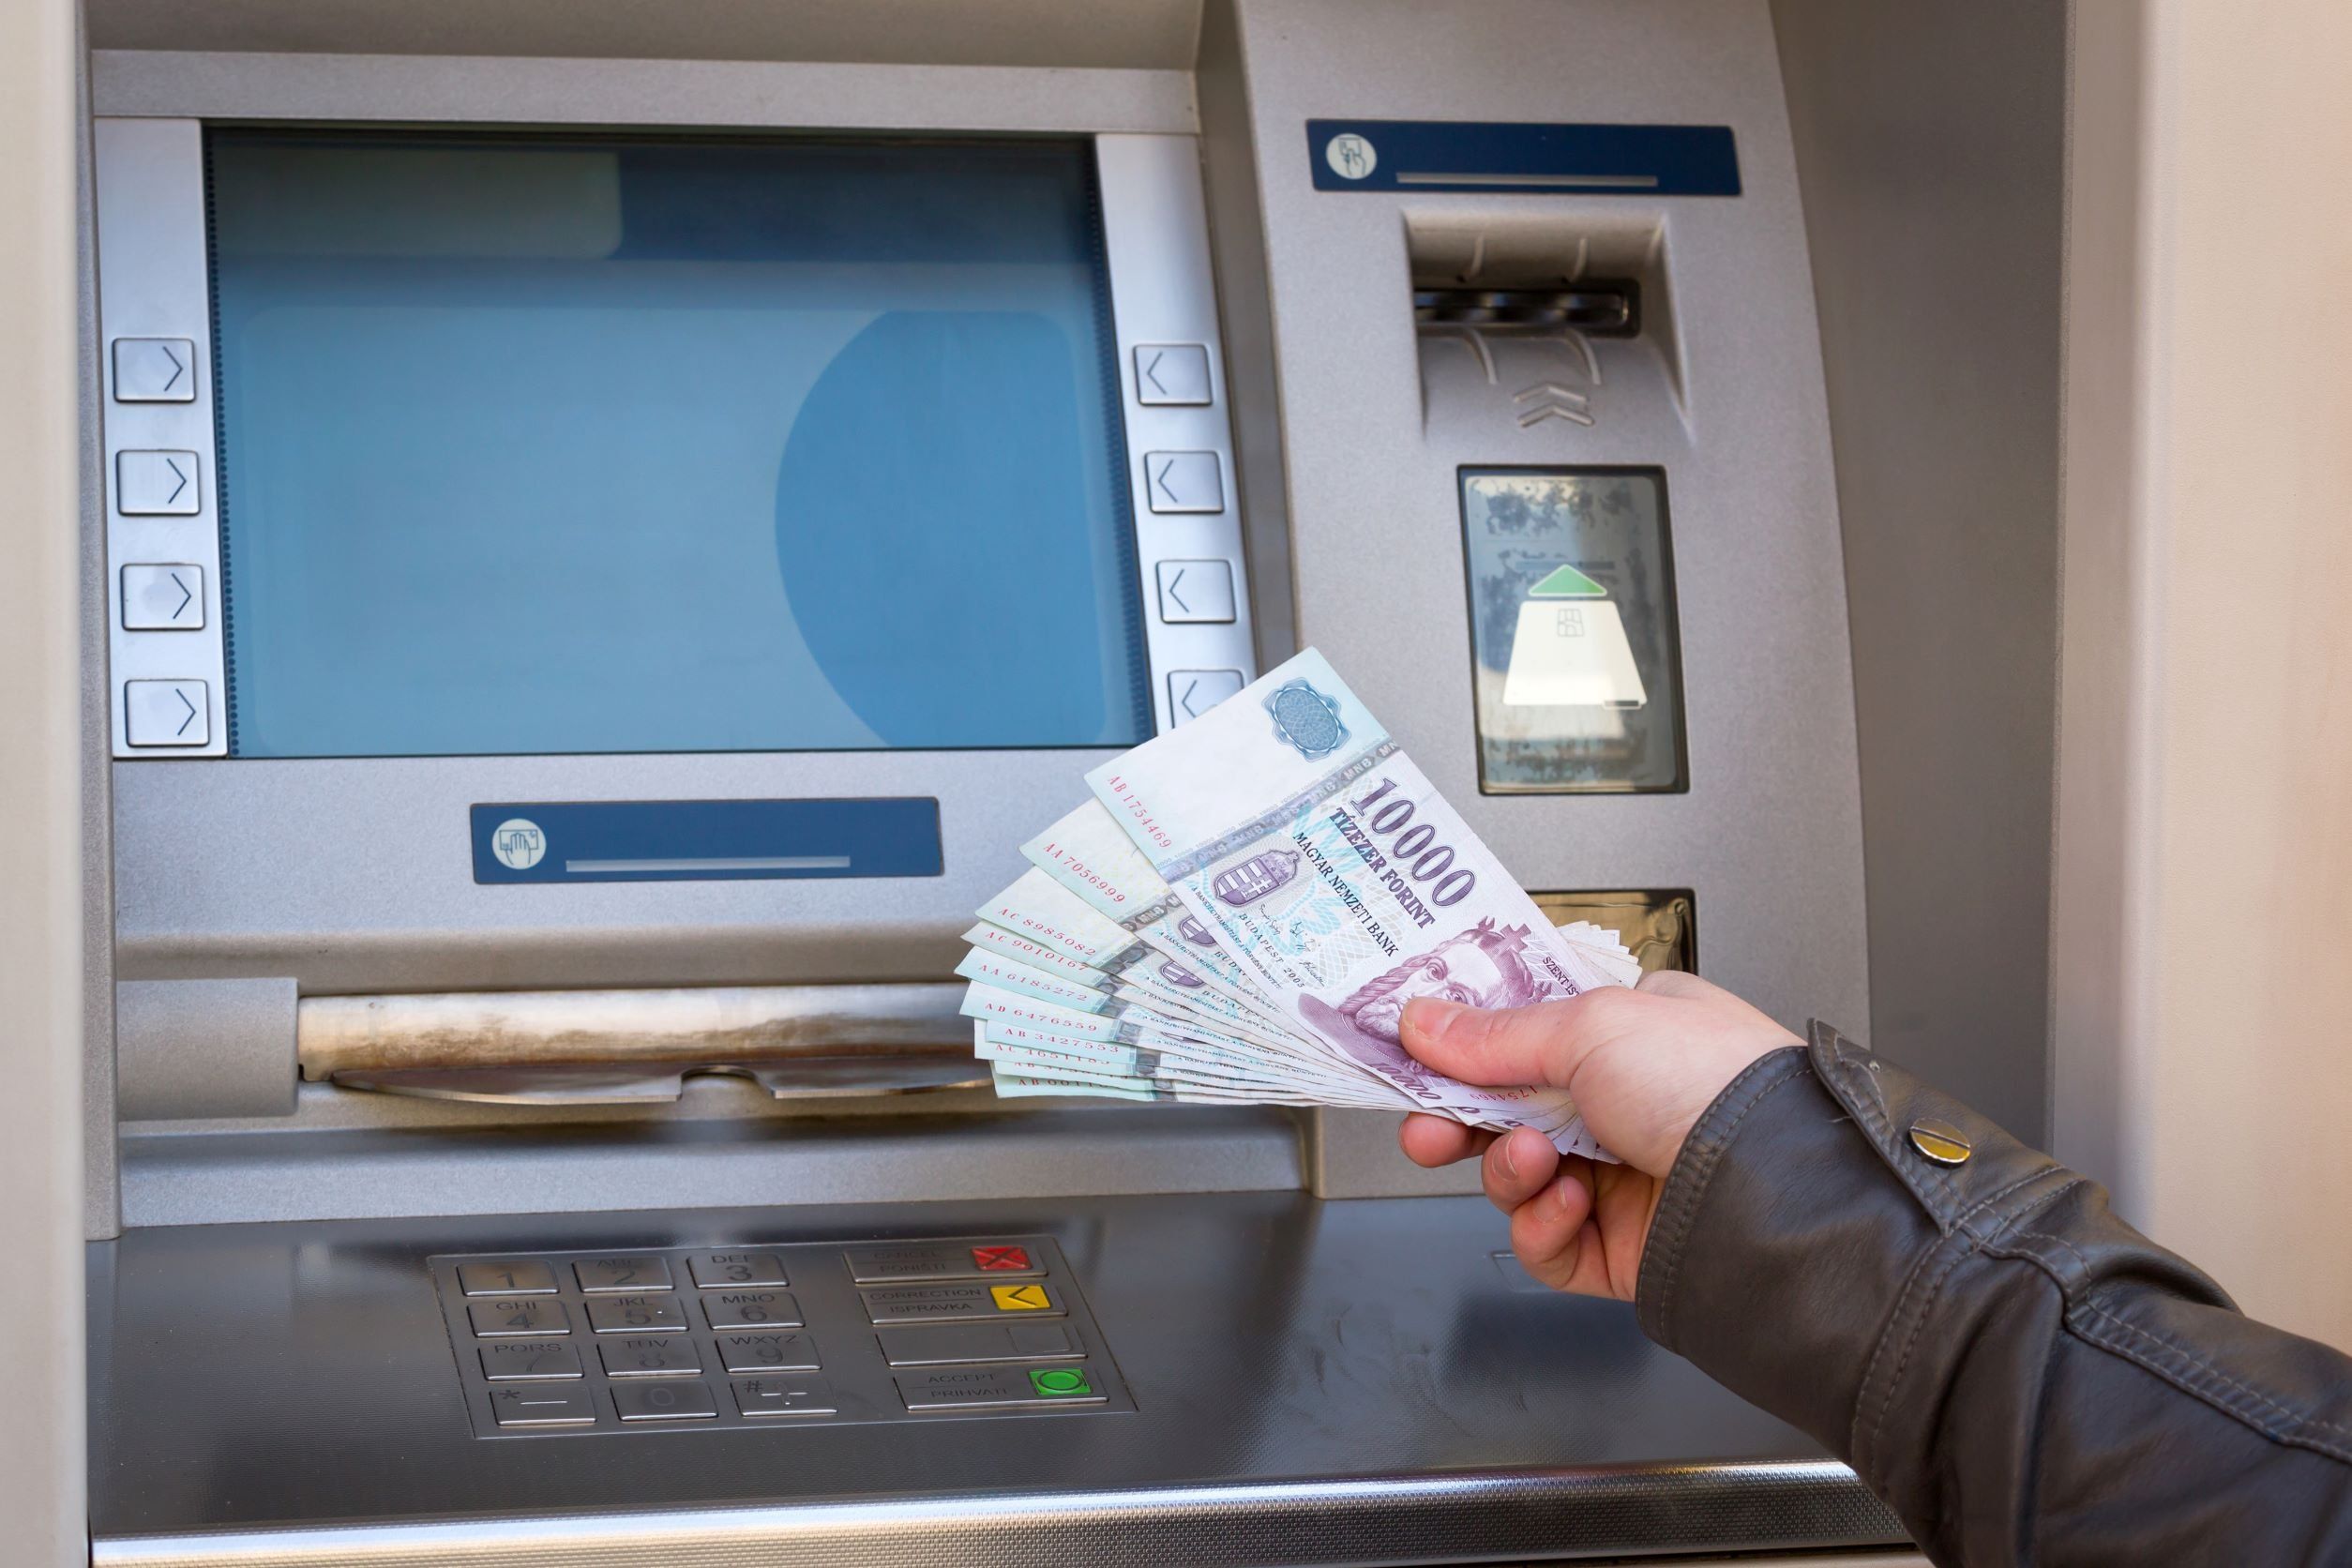 Egyrre többen használják pénzbefizetésre az arra alkalmas ATM-eket